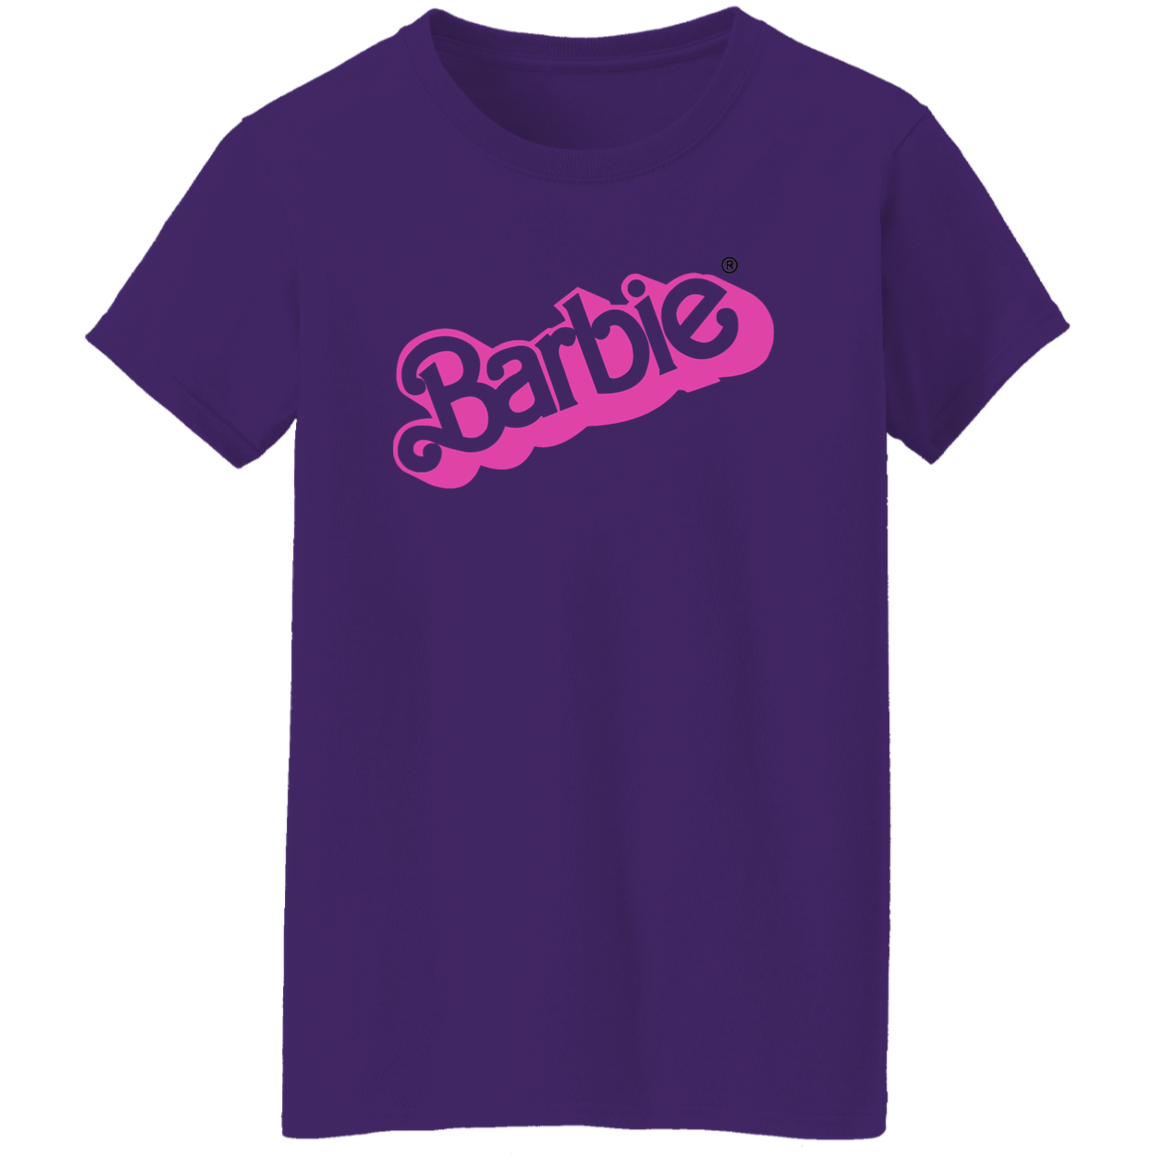 Barbie Ladies' 5.3 oz. T-Shirt